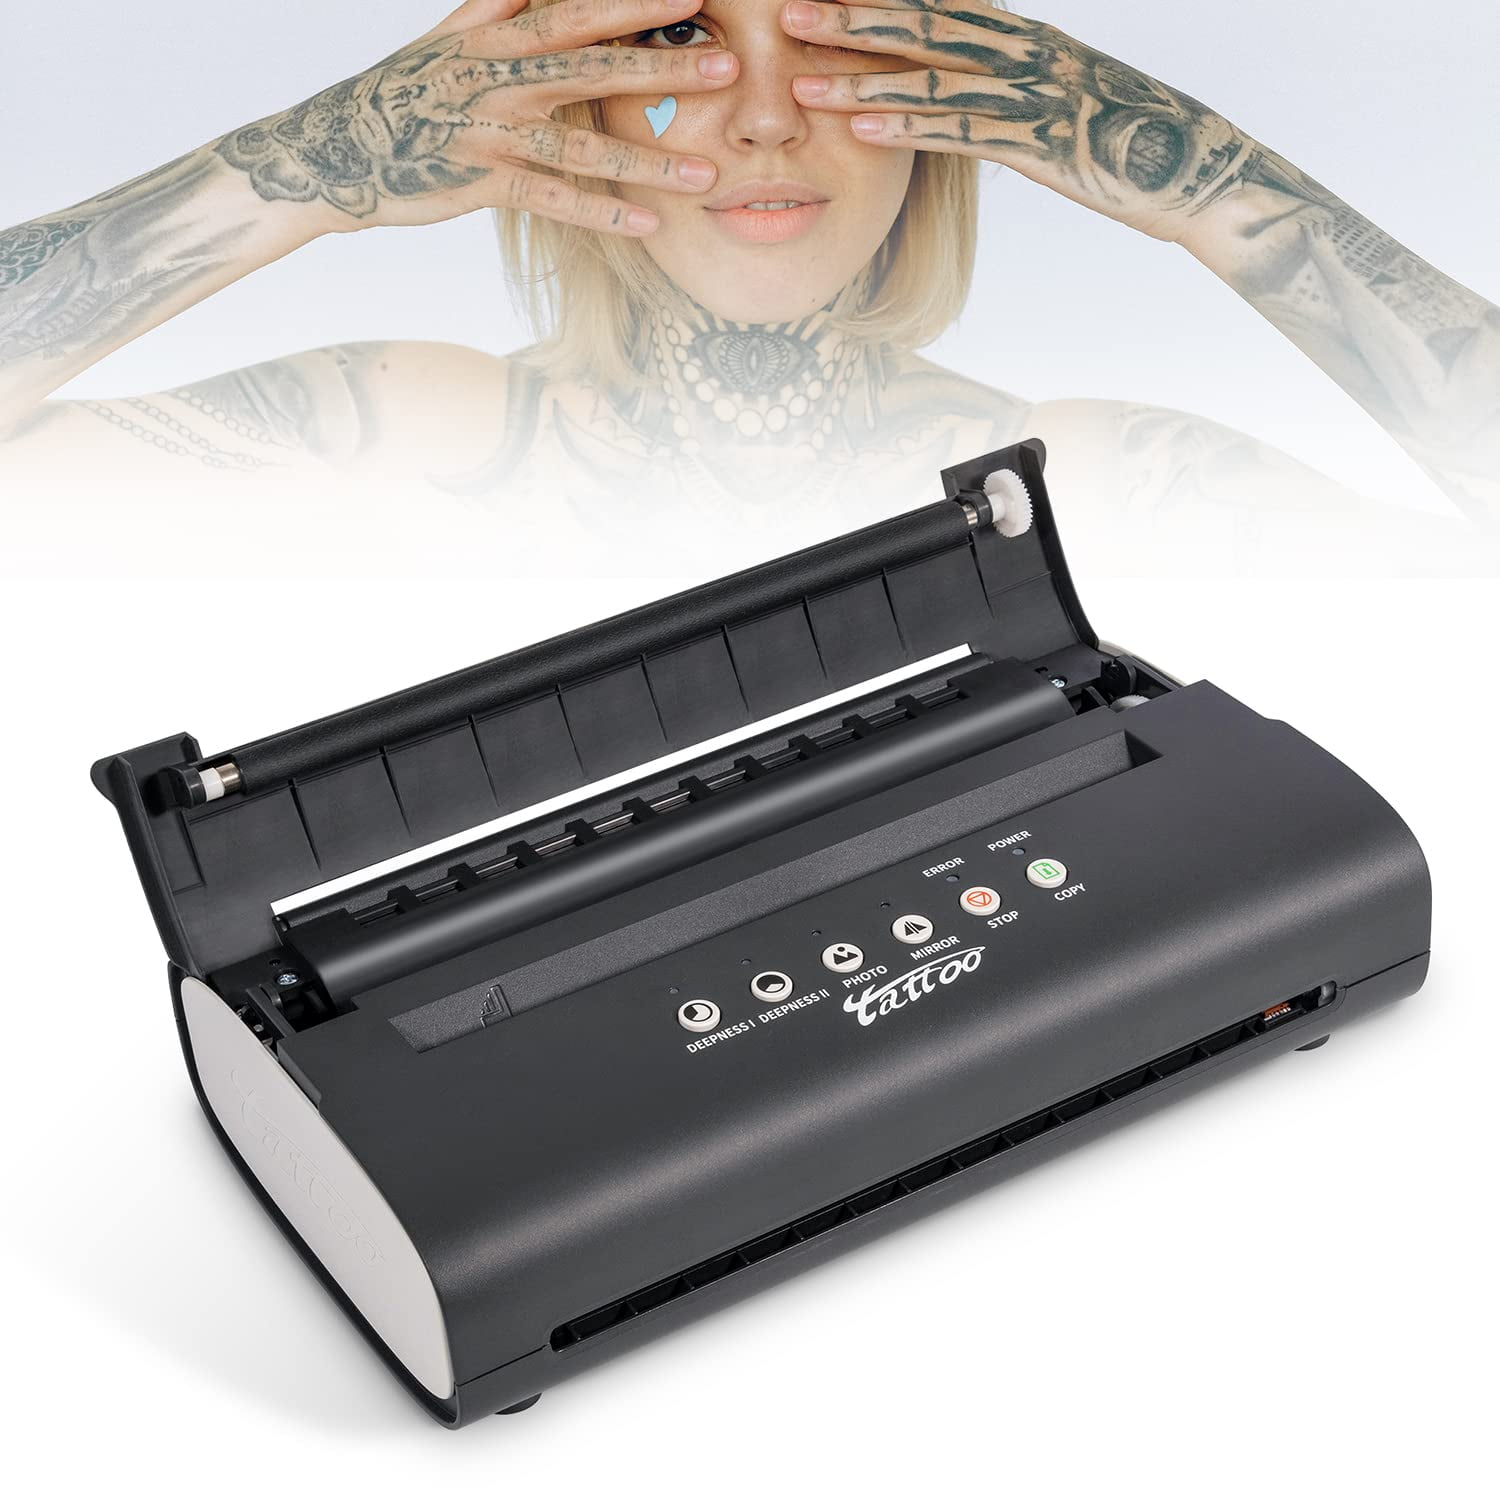 Usiriy Tattoo Transfer Stencil Machine Black Tattoo Transfer Printer  Machine for Printing and Transferring Drawing Tools